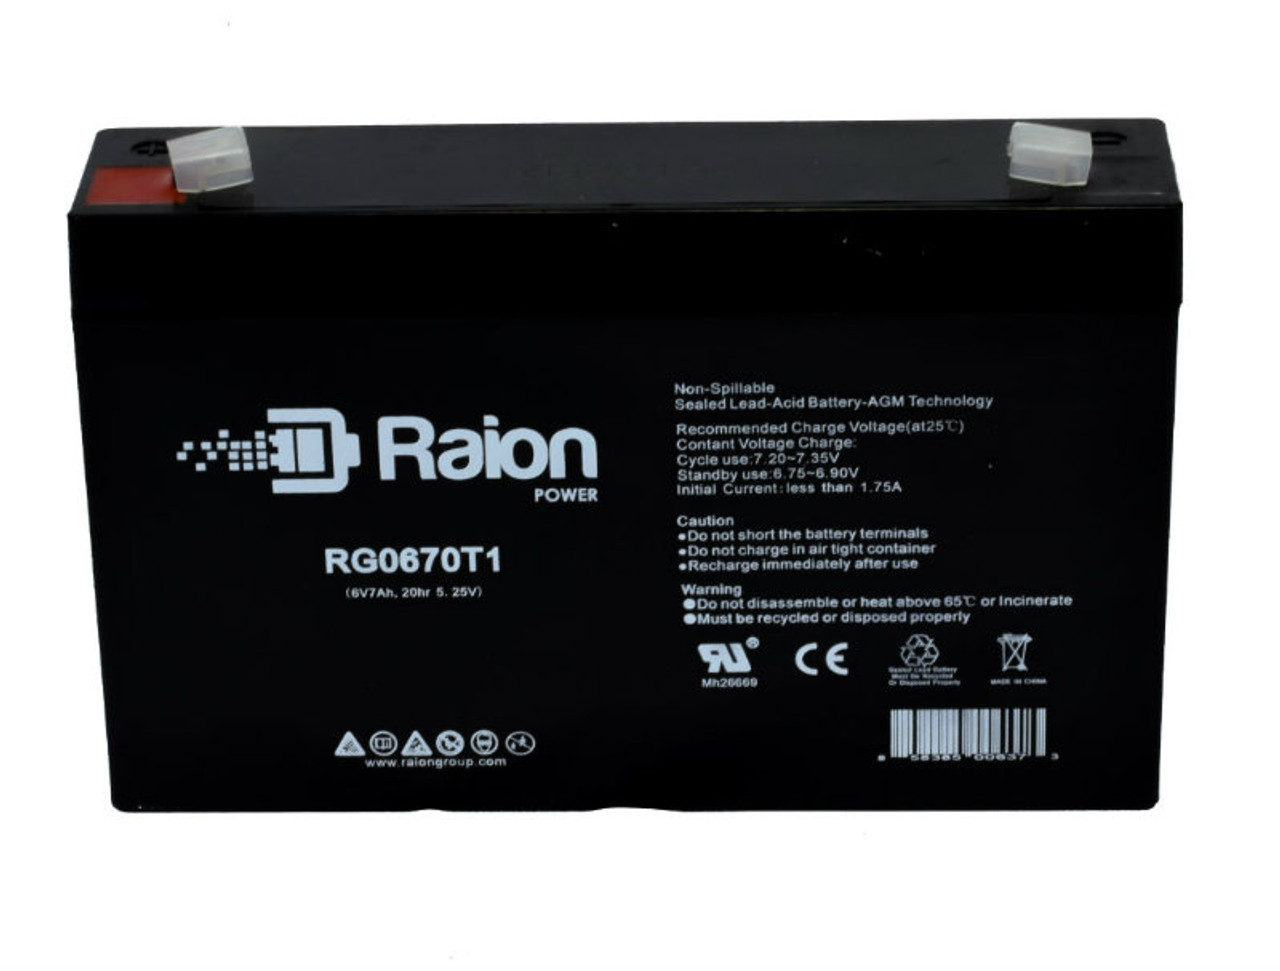 Raion Power RG0670T1 SLA Battery for ELK ELK-0675 OEM Battery